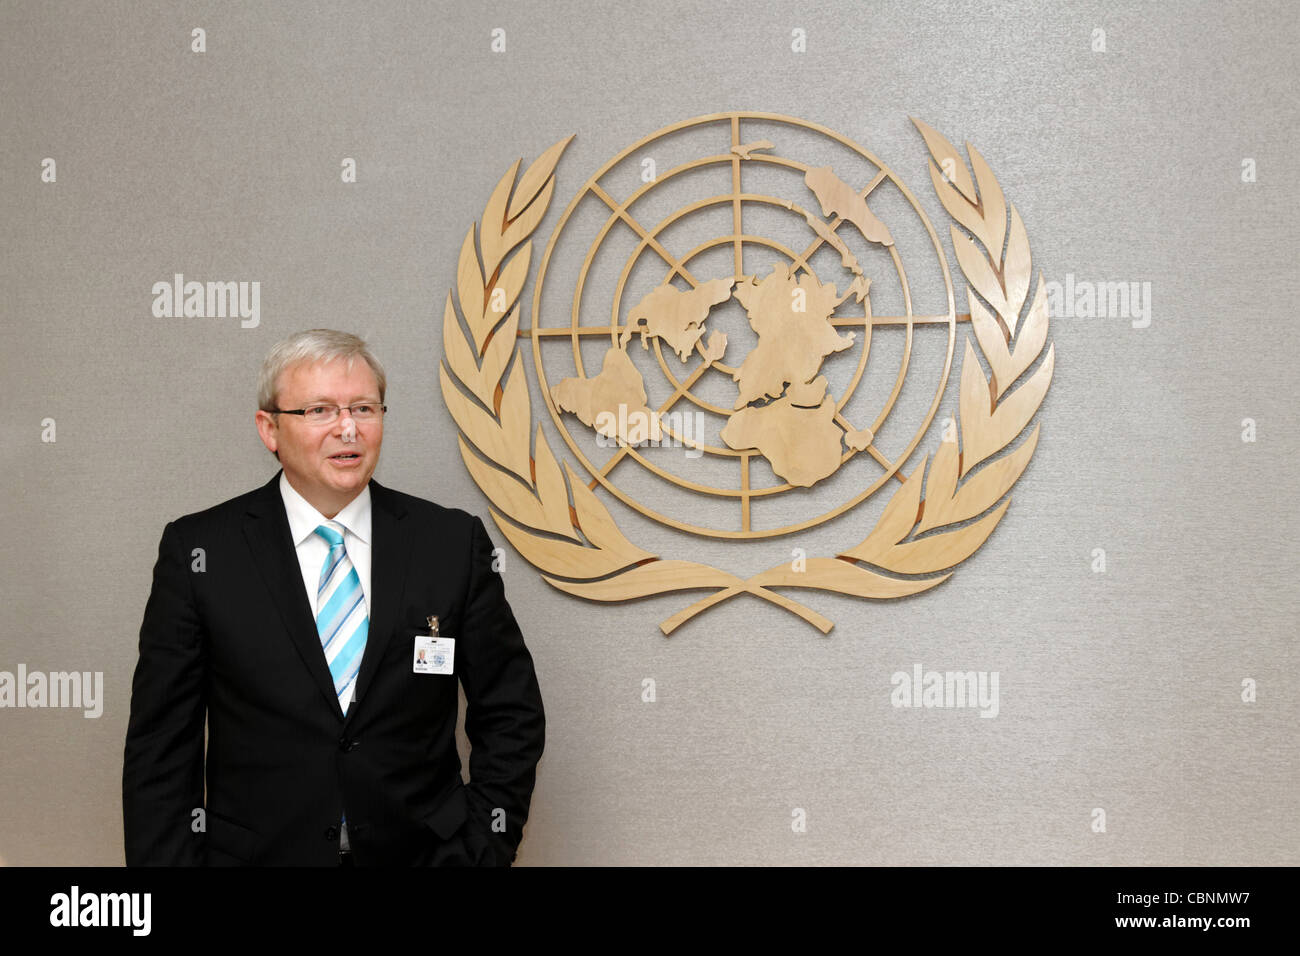 El Ministro australiano de Relaciones Exteriores, Sr. Kevin Rudd espera en la Sede de las Naciones Unidas para reunirse con el Secretario General Ban Ki-moon. Foto de stock